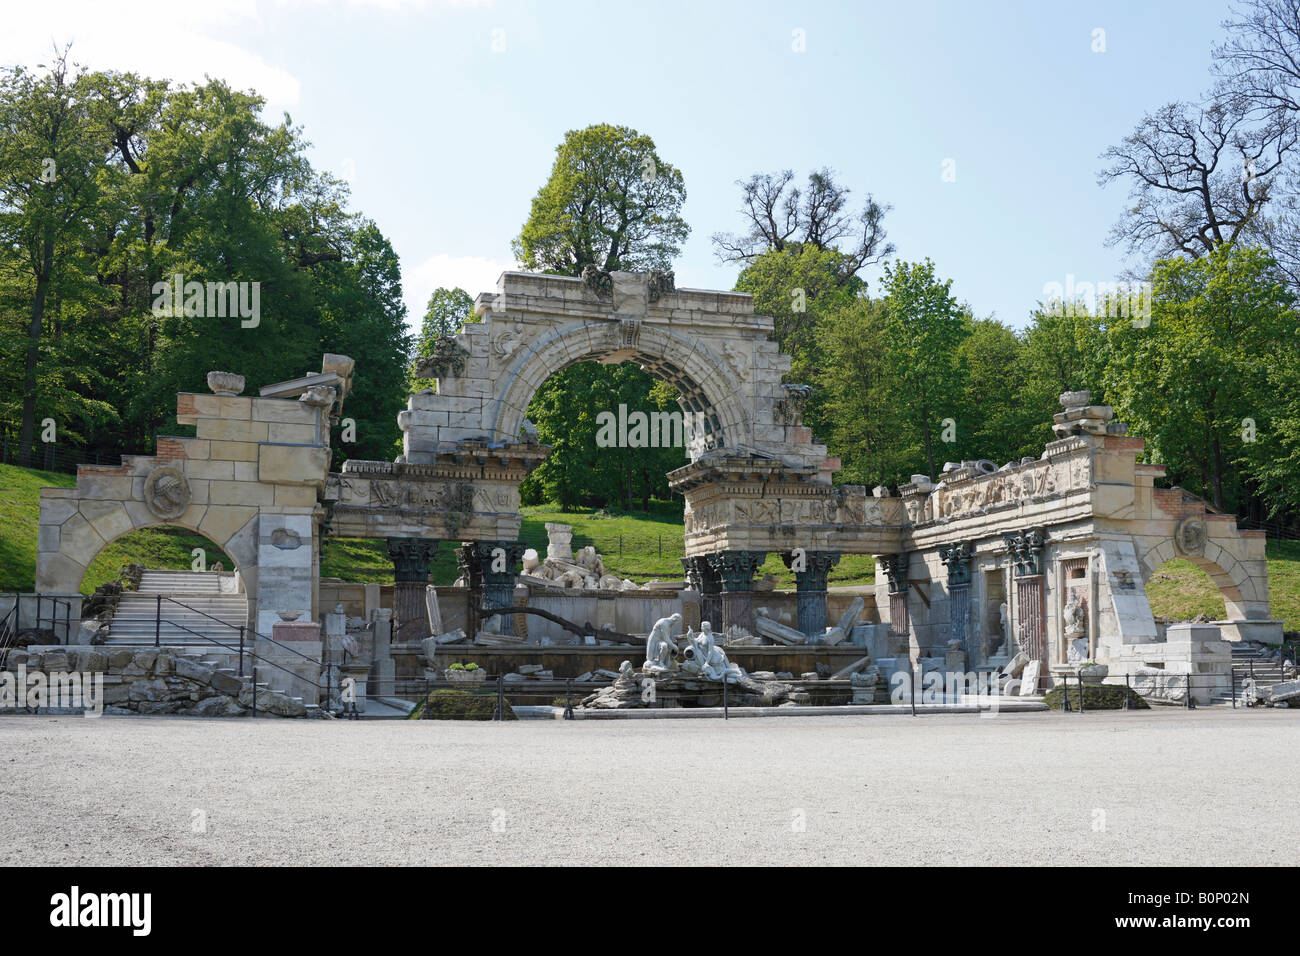 Wien, Schloßpark Schönbrunn, """Römische Ruine"" von Johann Ferdinand Hetzendorf von Hohenberg" Stock Photo